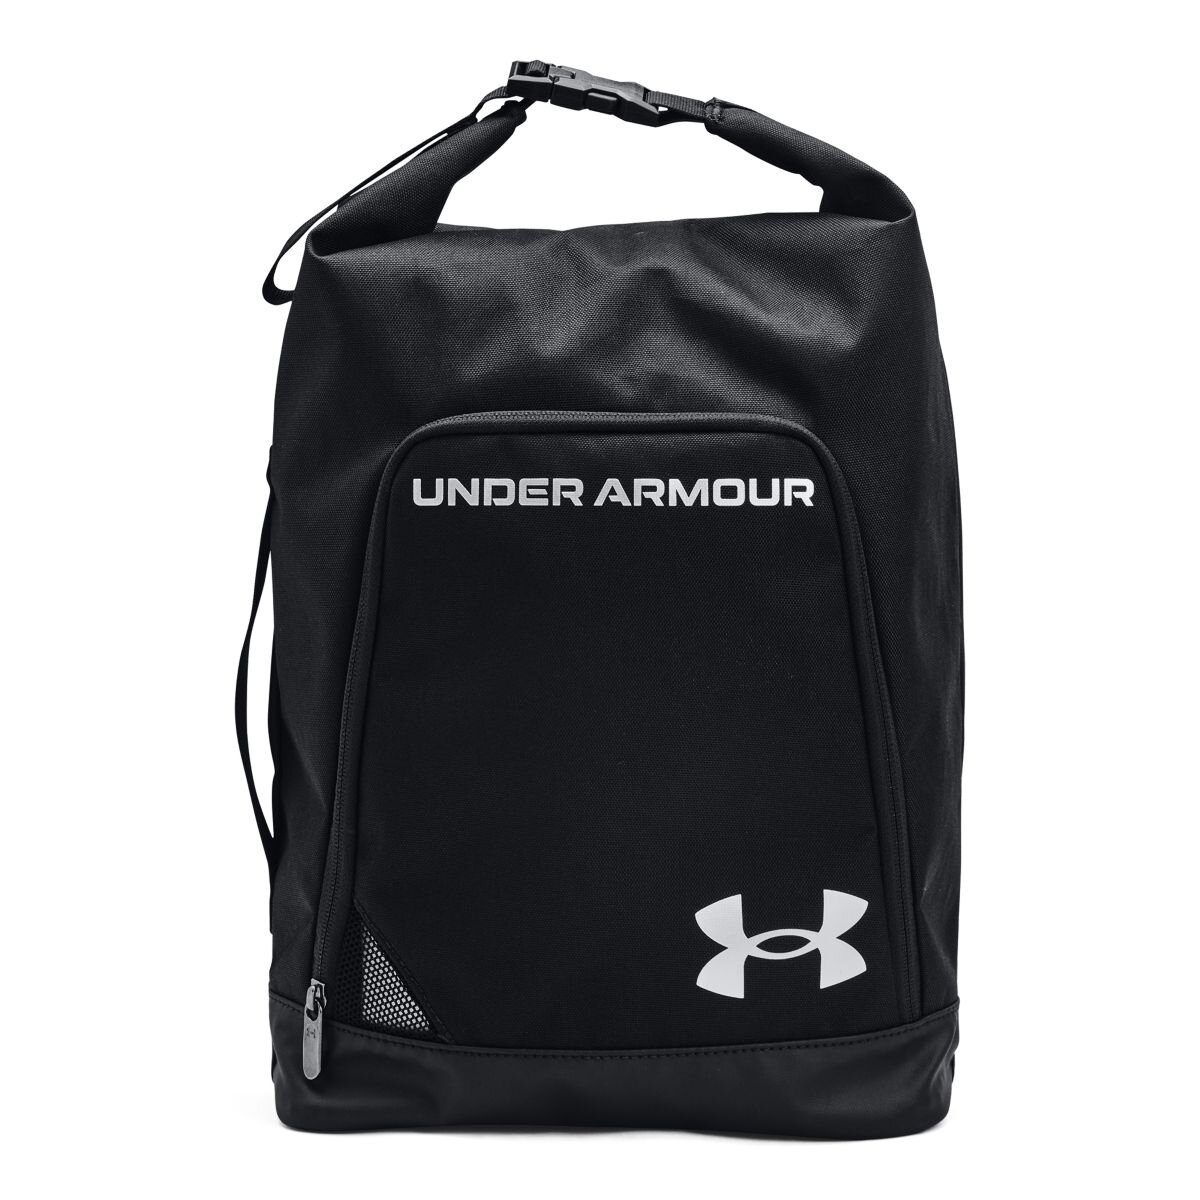 Under Armour Contain Shoe Bag BLACK - zvìtšit obrázek